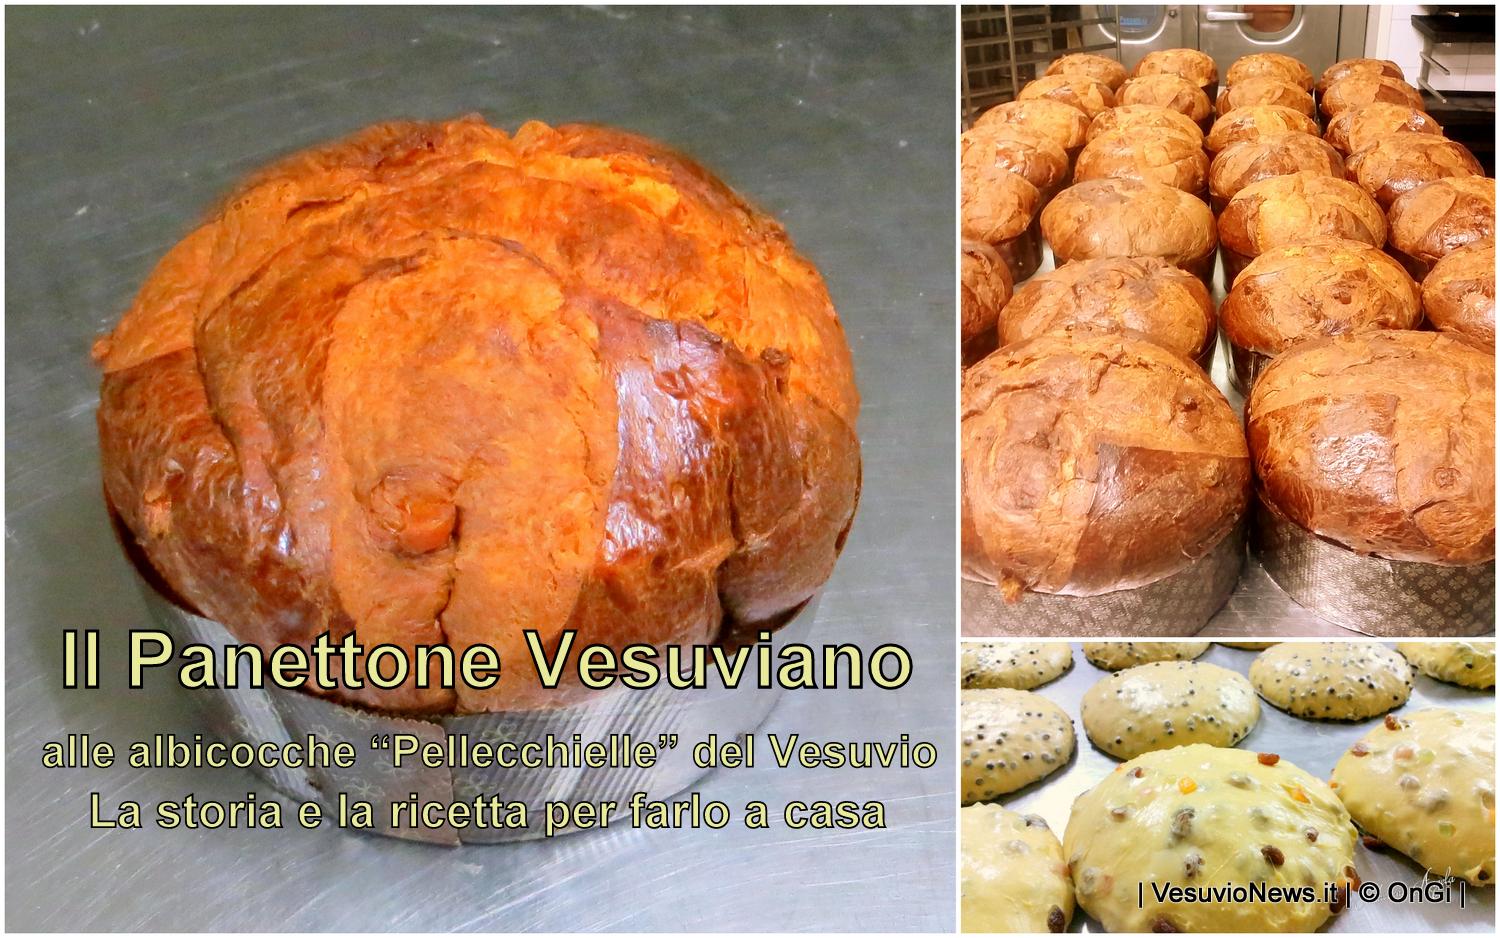 Il Panettone Vesuviano, la ricetta per farlo con le “Pellecchielle” del Vesuvio